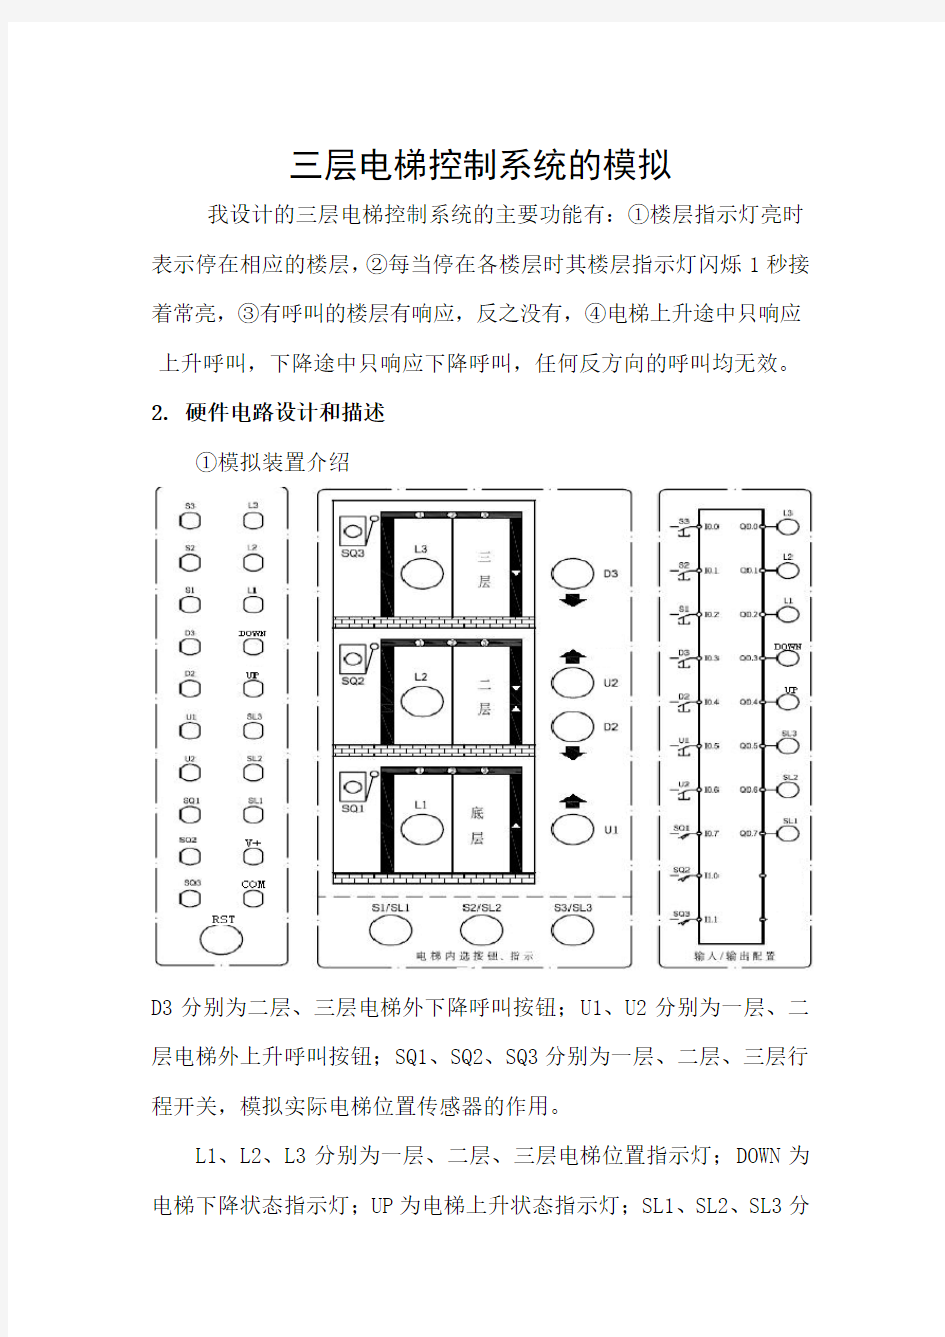 PLC课程设计(三层电梯控制系统)